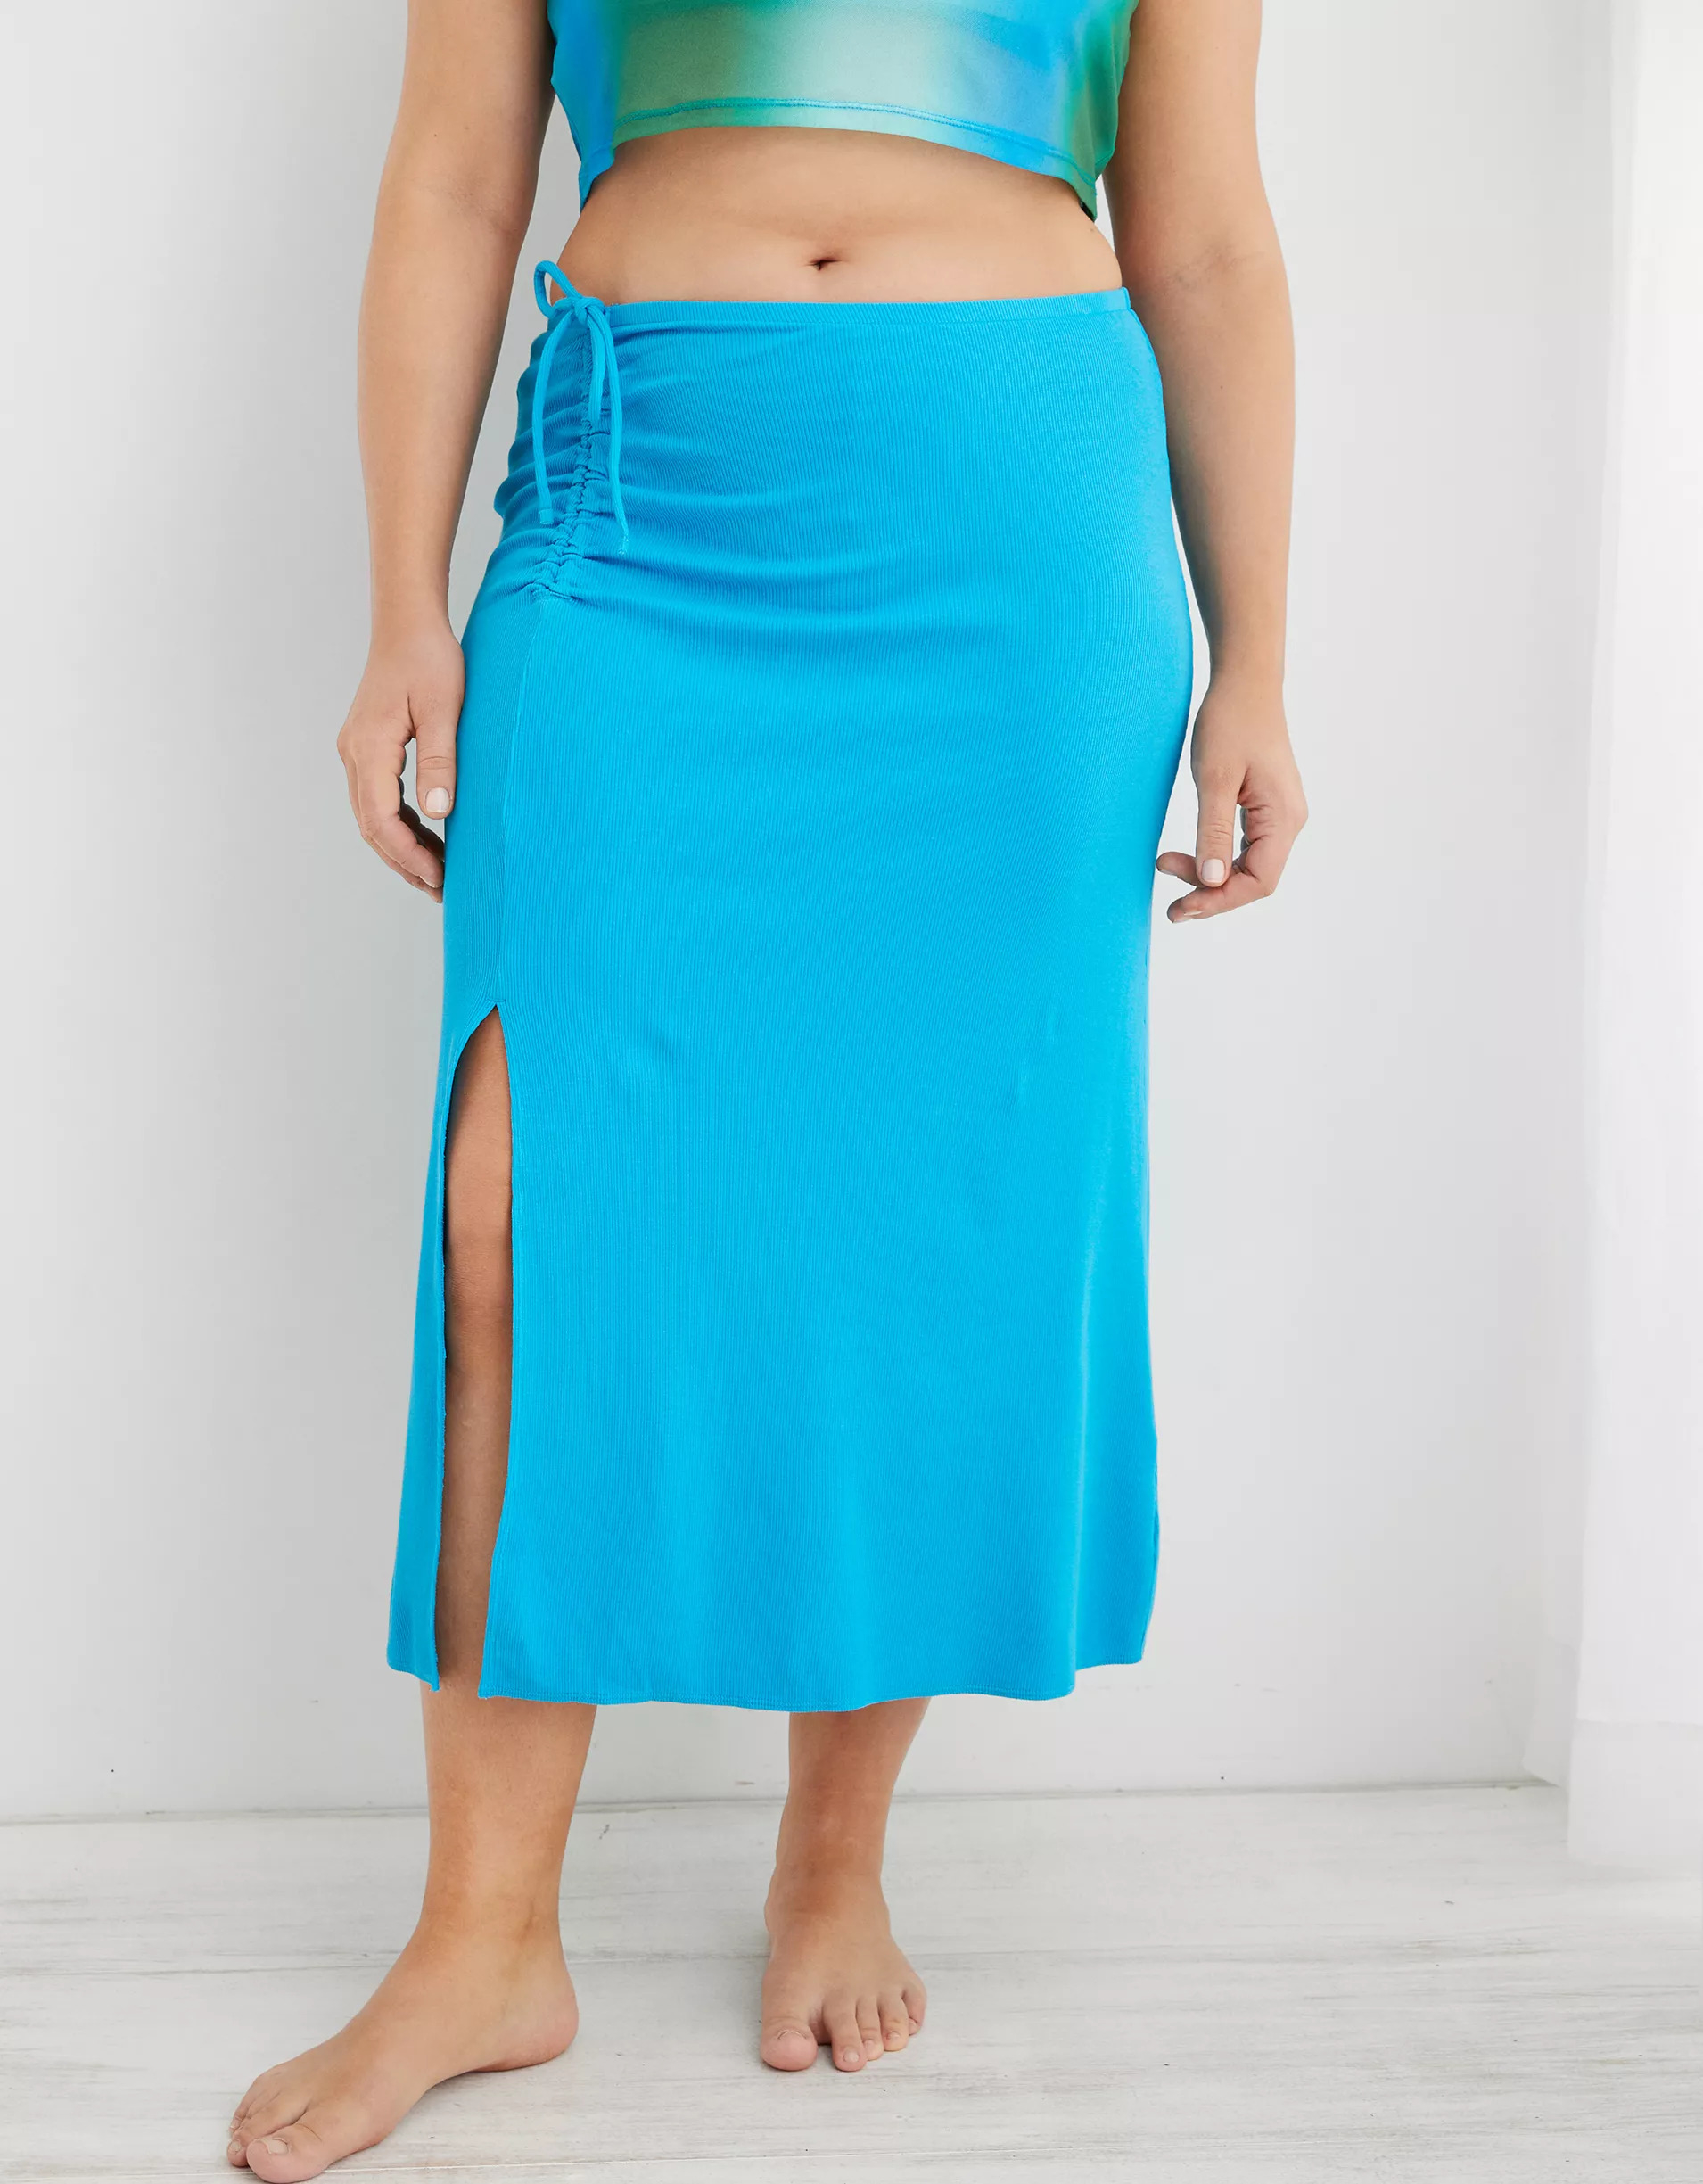 Model wearing the elite blue skirt